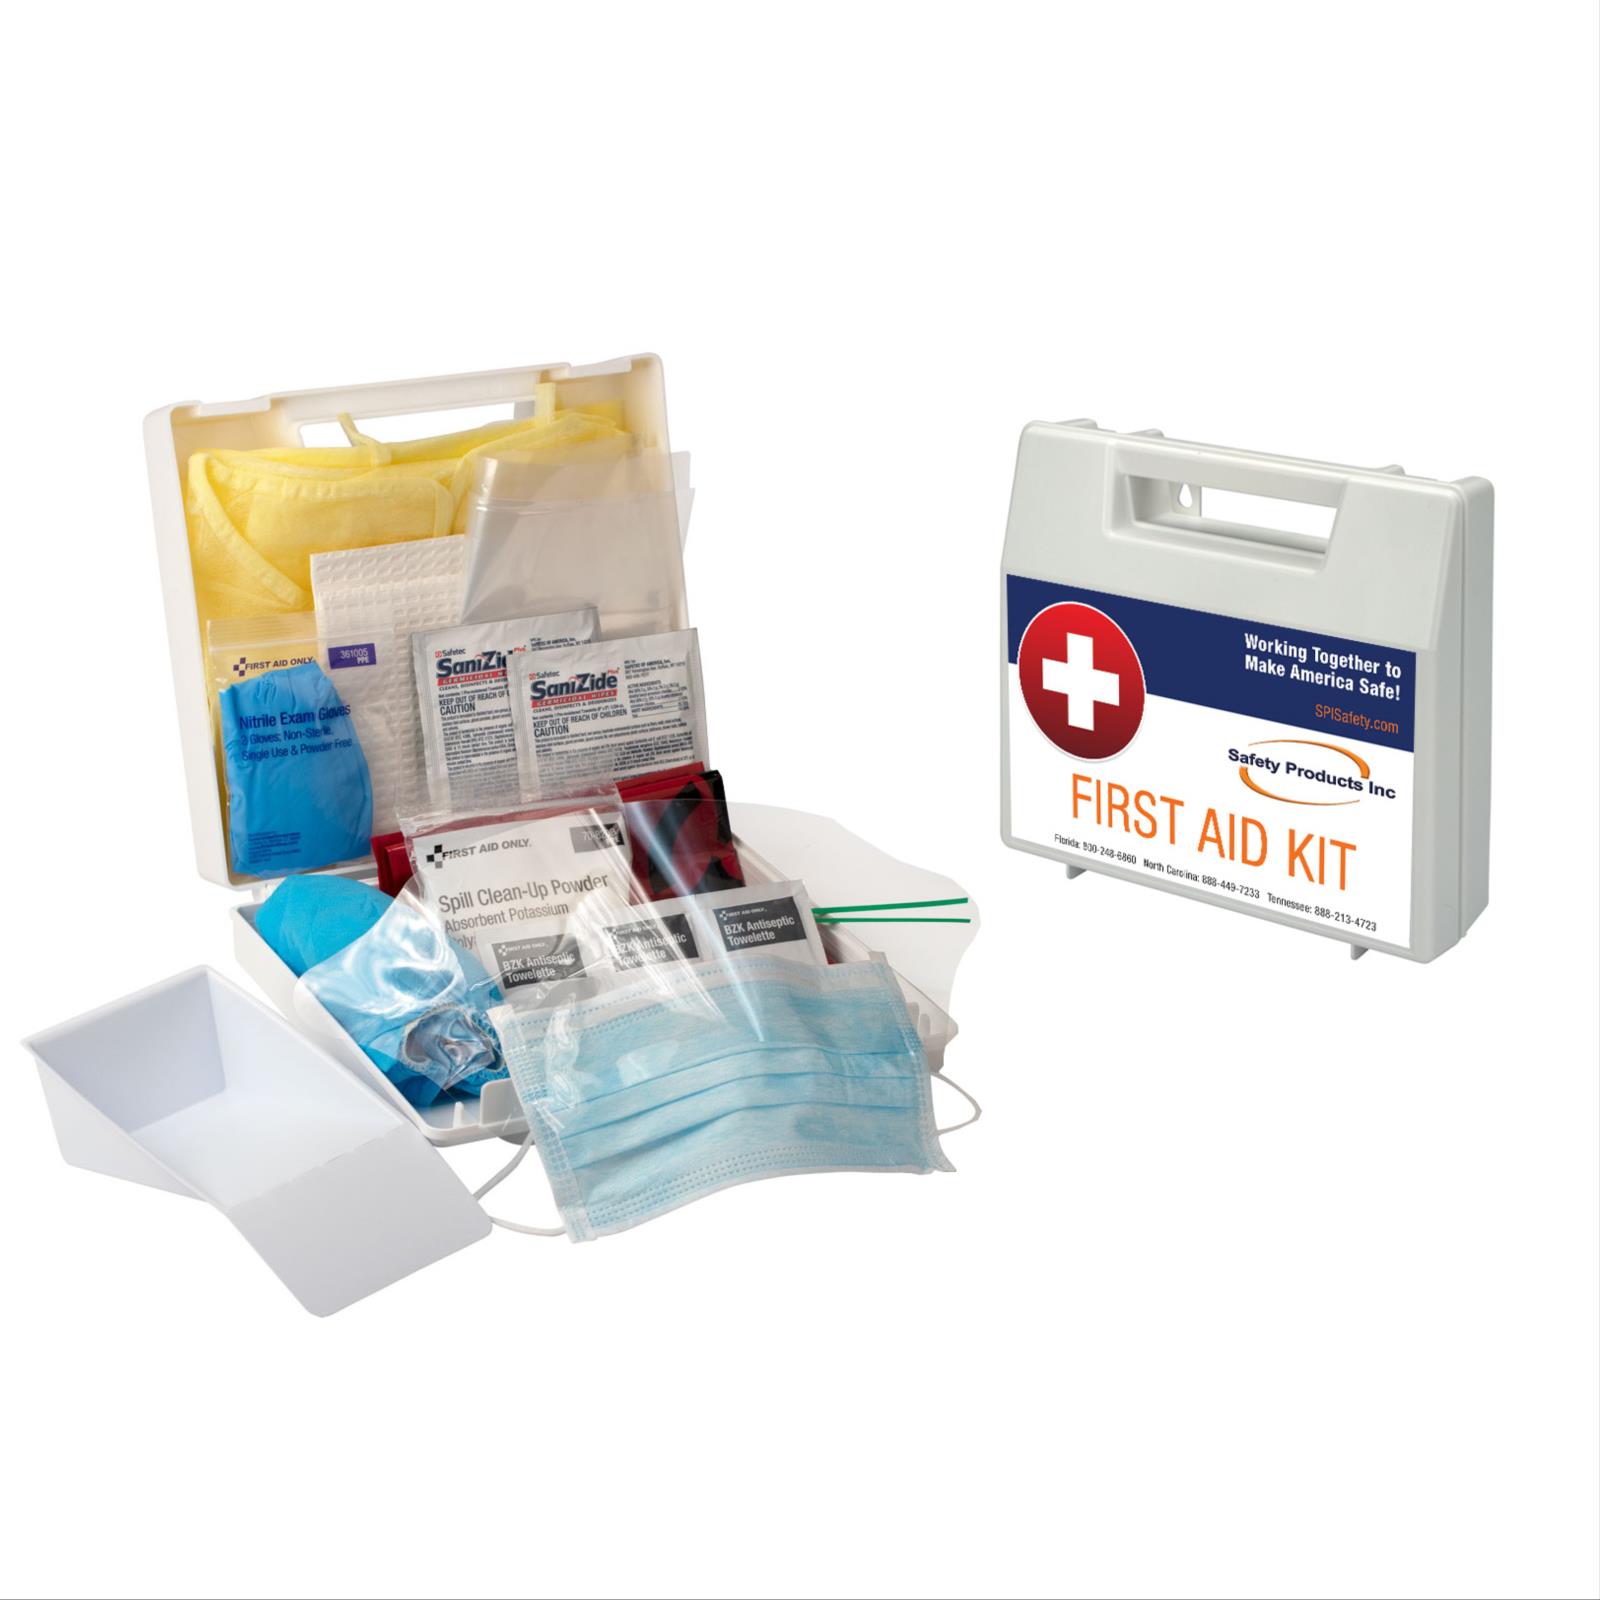 Bloodborne Pathogen & Body Fluid Spill Kit